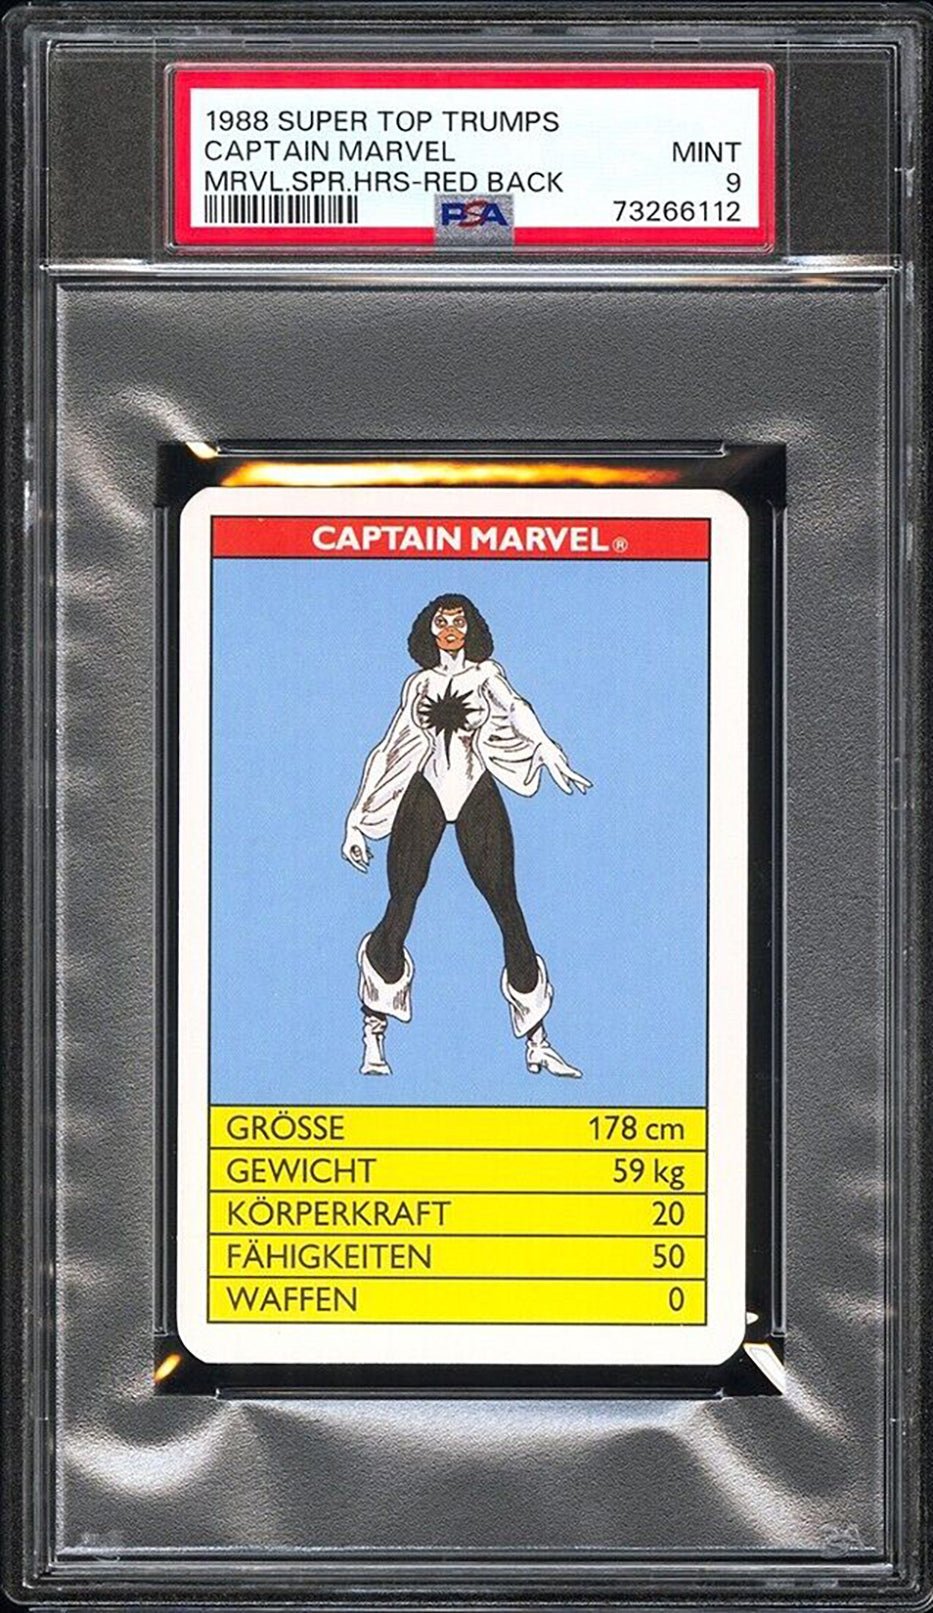 CAPTAIN MARVEL PSA 9 1988 Super Top Trumps Marvel Super Heroes Red Back Marvel Base Graded Cards - Hobby Gems